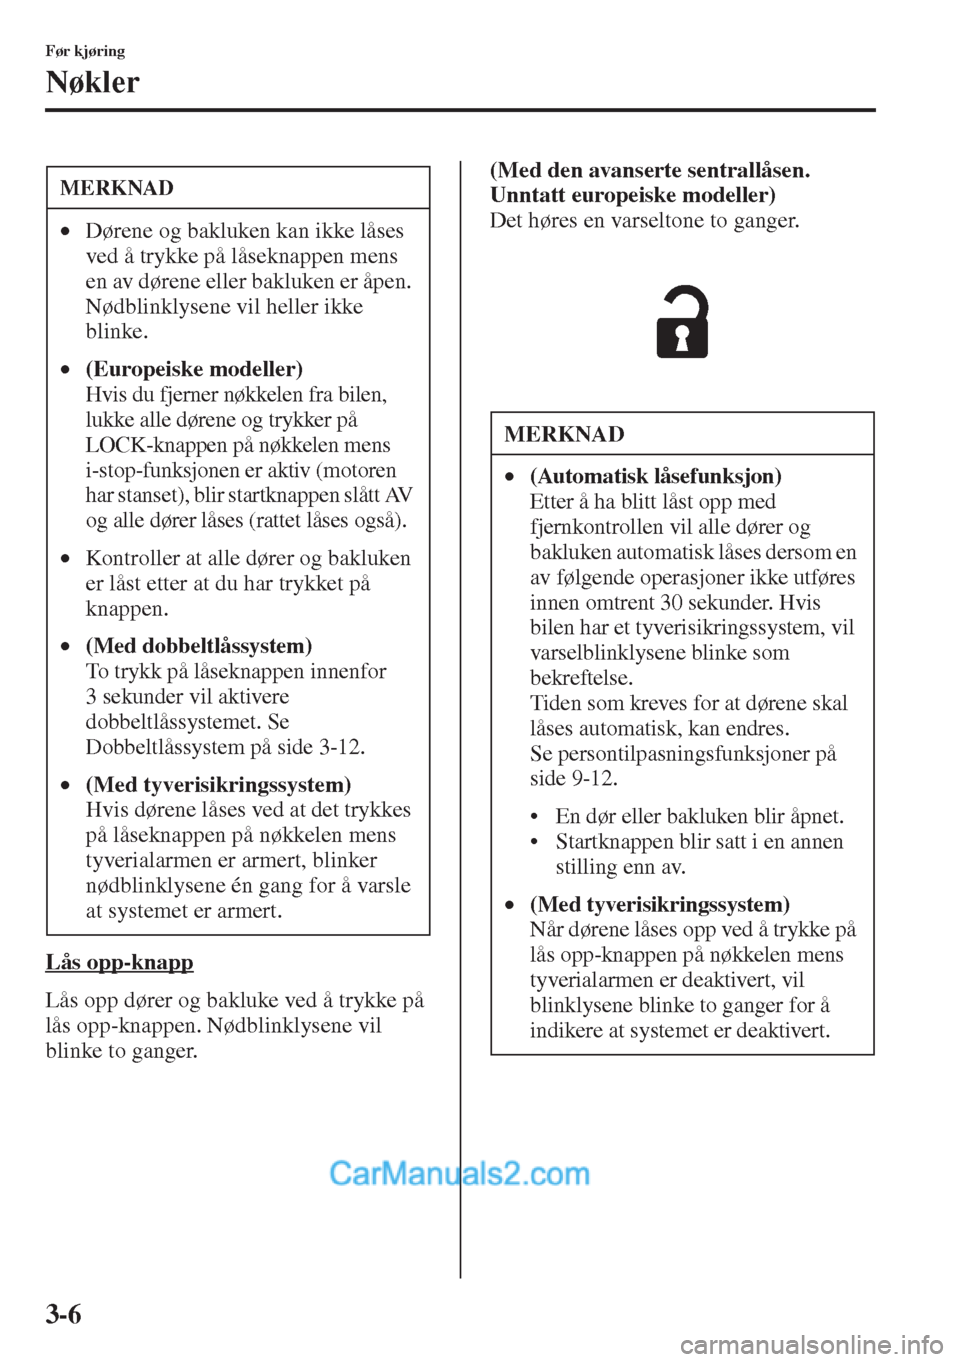 MAZDA MODEL CX-5 2015  Brukerhåndbok (in Norwegian) 3-6
Før kjøring
Nøkler
Lås opp-knapp
Lås opp dører og bakluke ved å trykke på 
lås opp-knappen. Nødblinklysene vil 
blinke to ganger.(Med den avanserte sentrallåsen. 
Unntatt europeiske mod